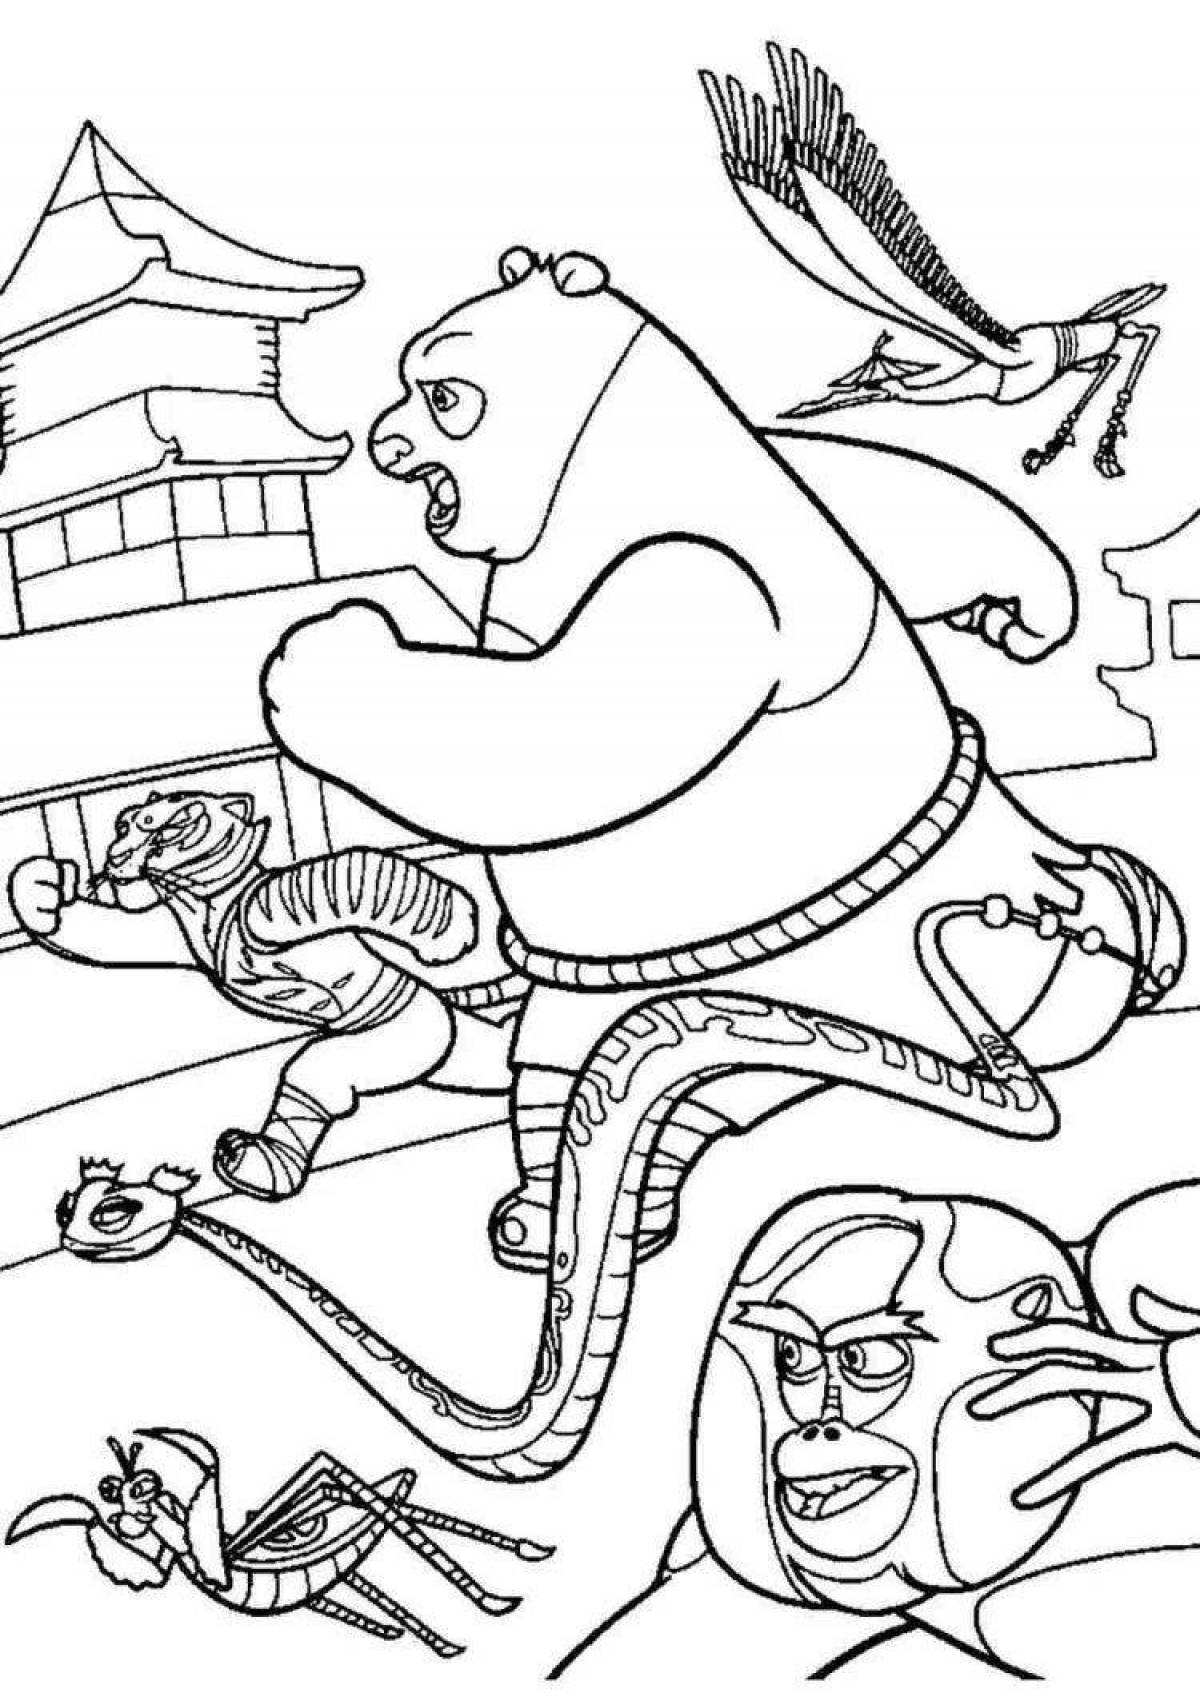 Magic kung fu panda coloring book for kids